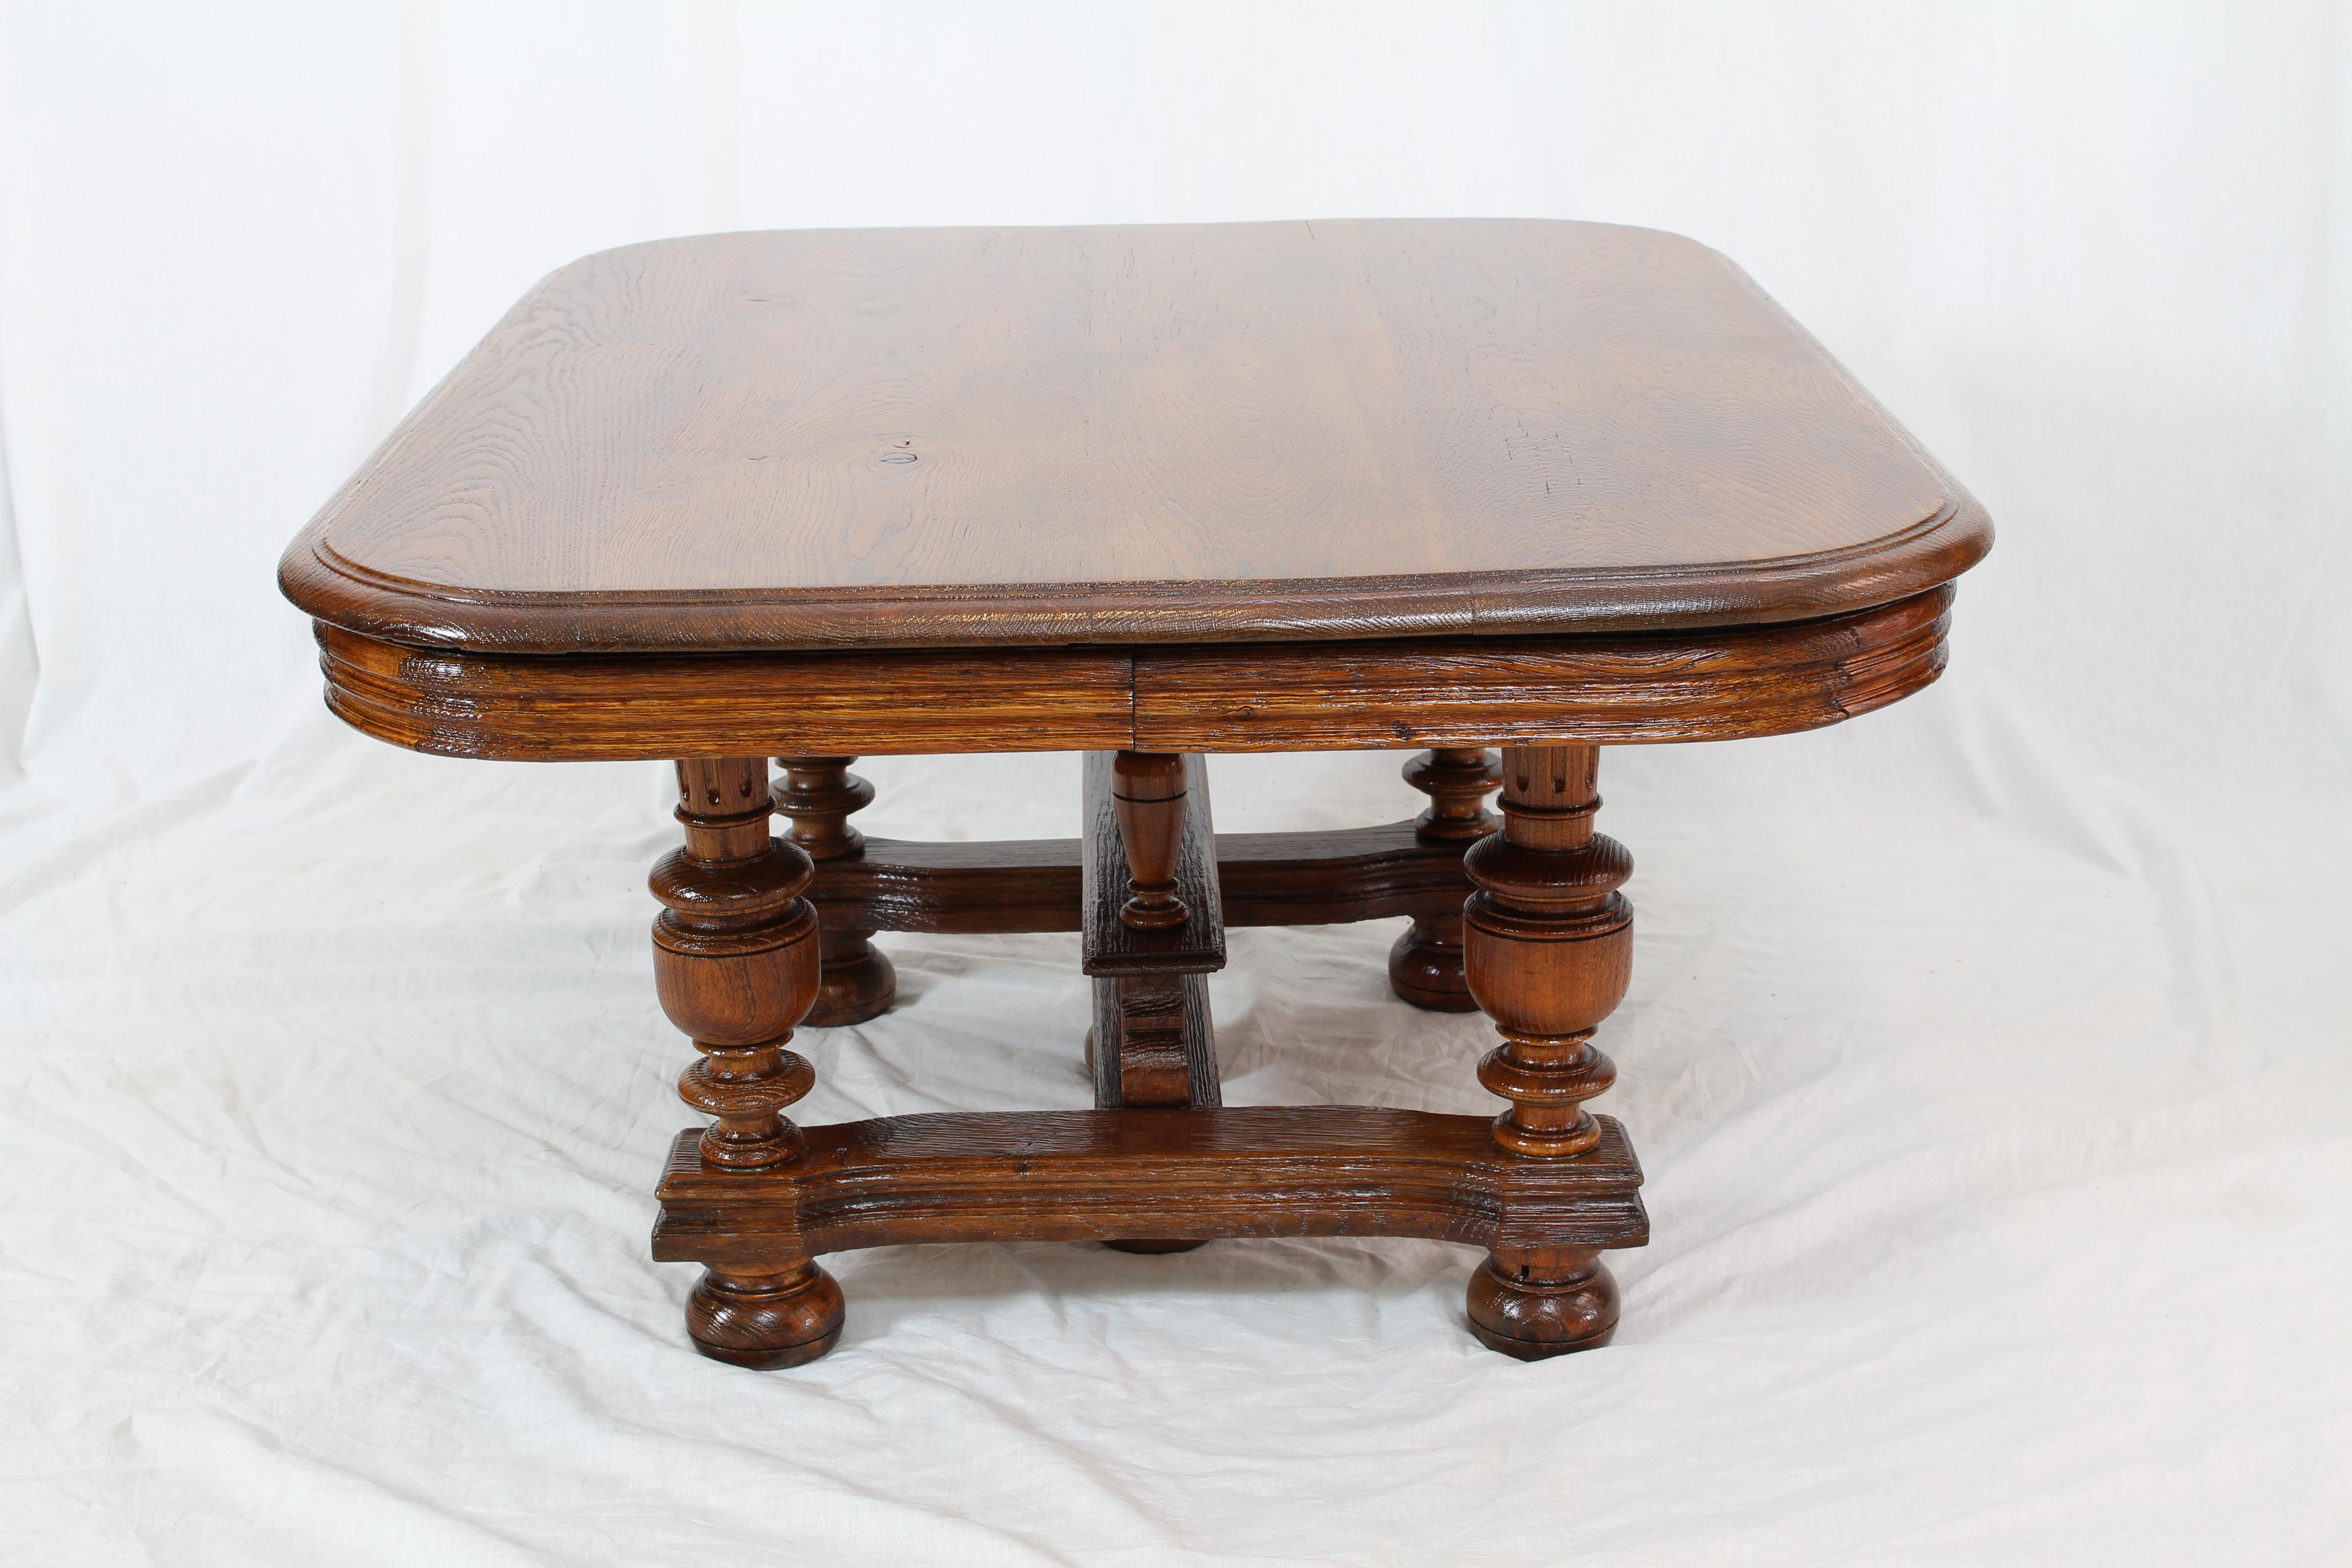 Table de canapé de l'époque d'Henry Deux, vers 1880 de France en bois de chêne massif. En très bon état restauré.
Très belle table basse, bonnes proportions.